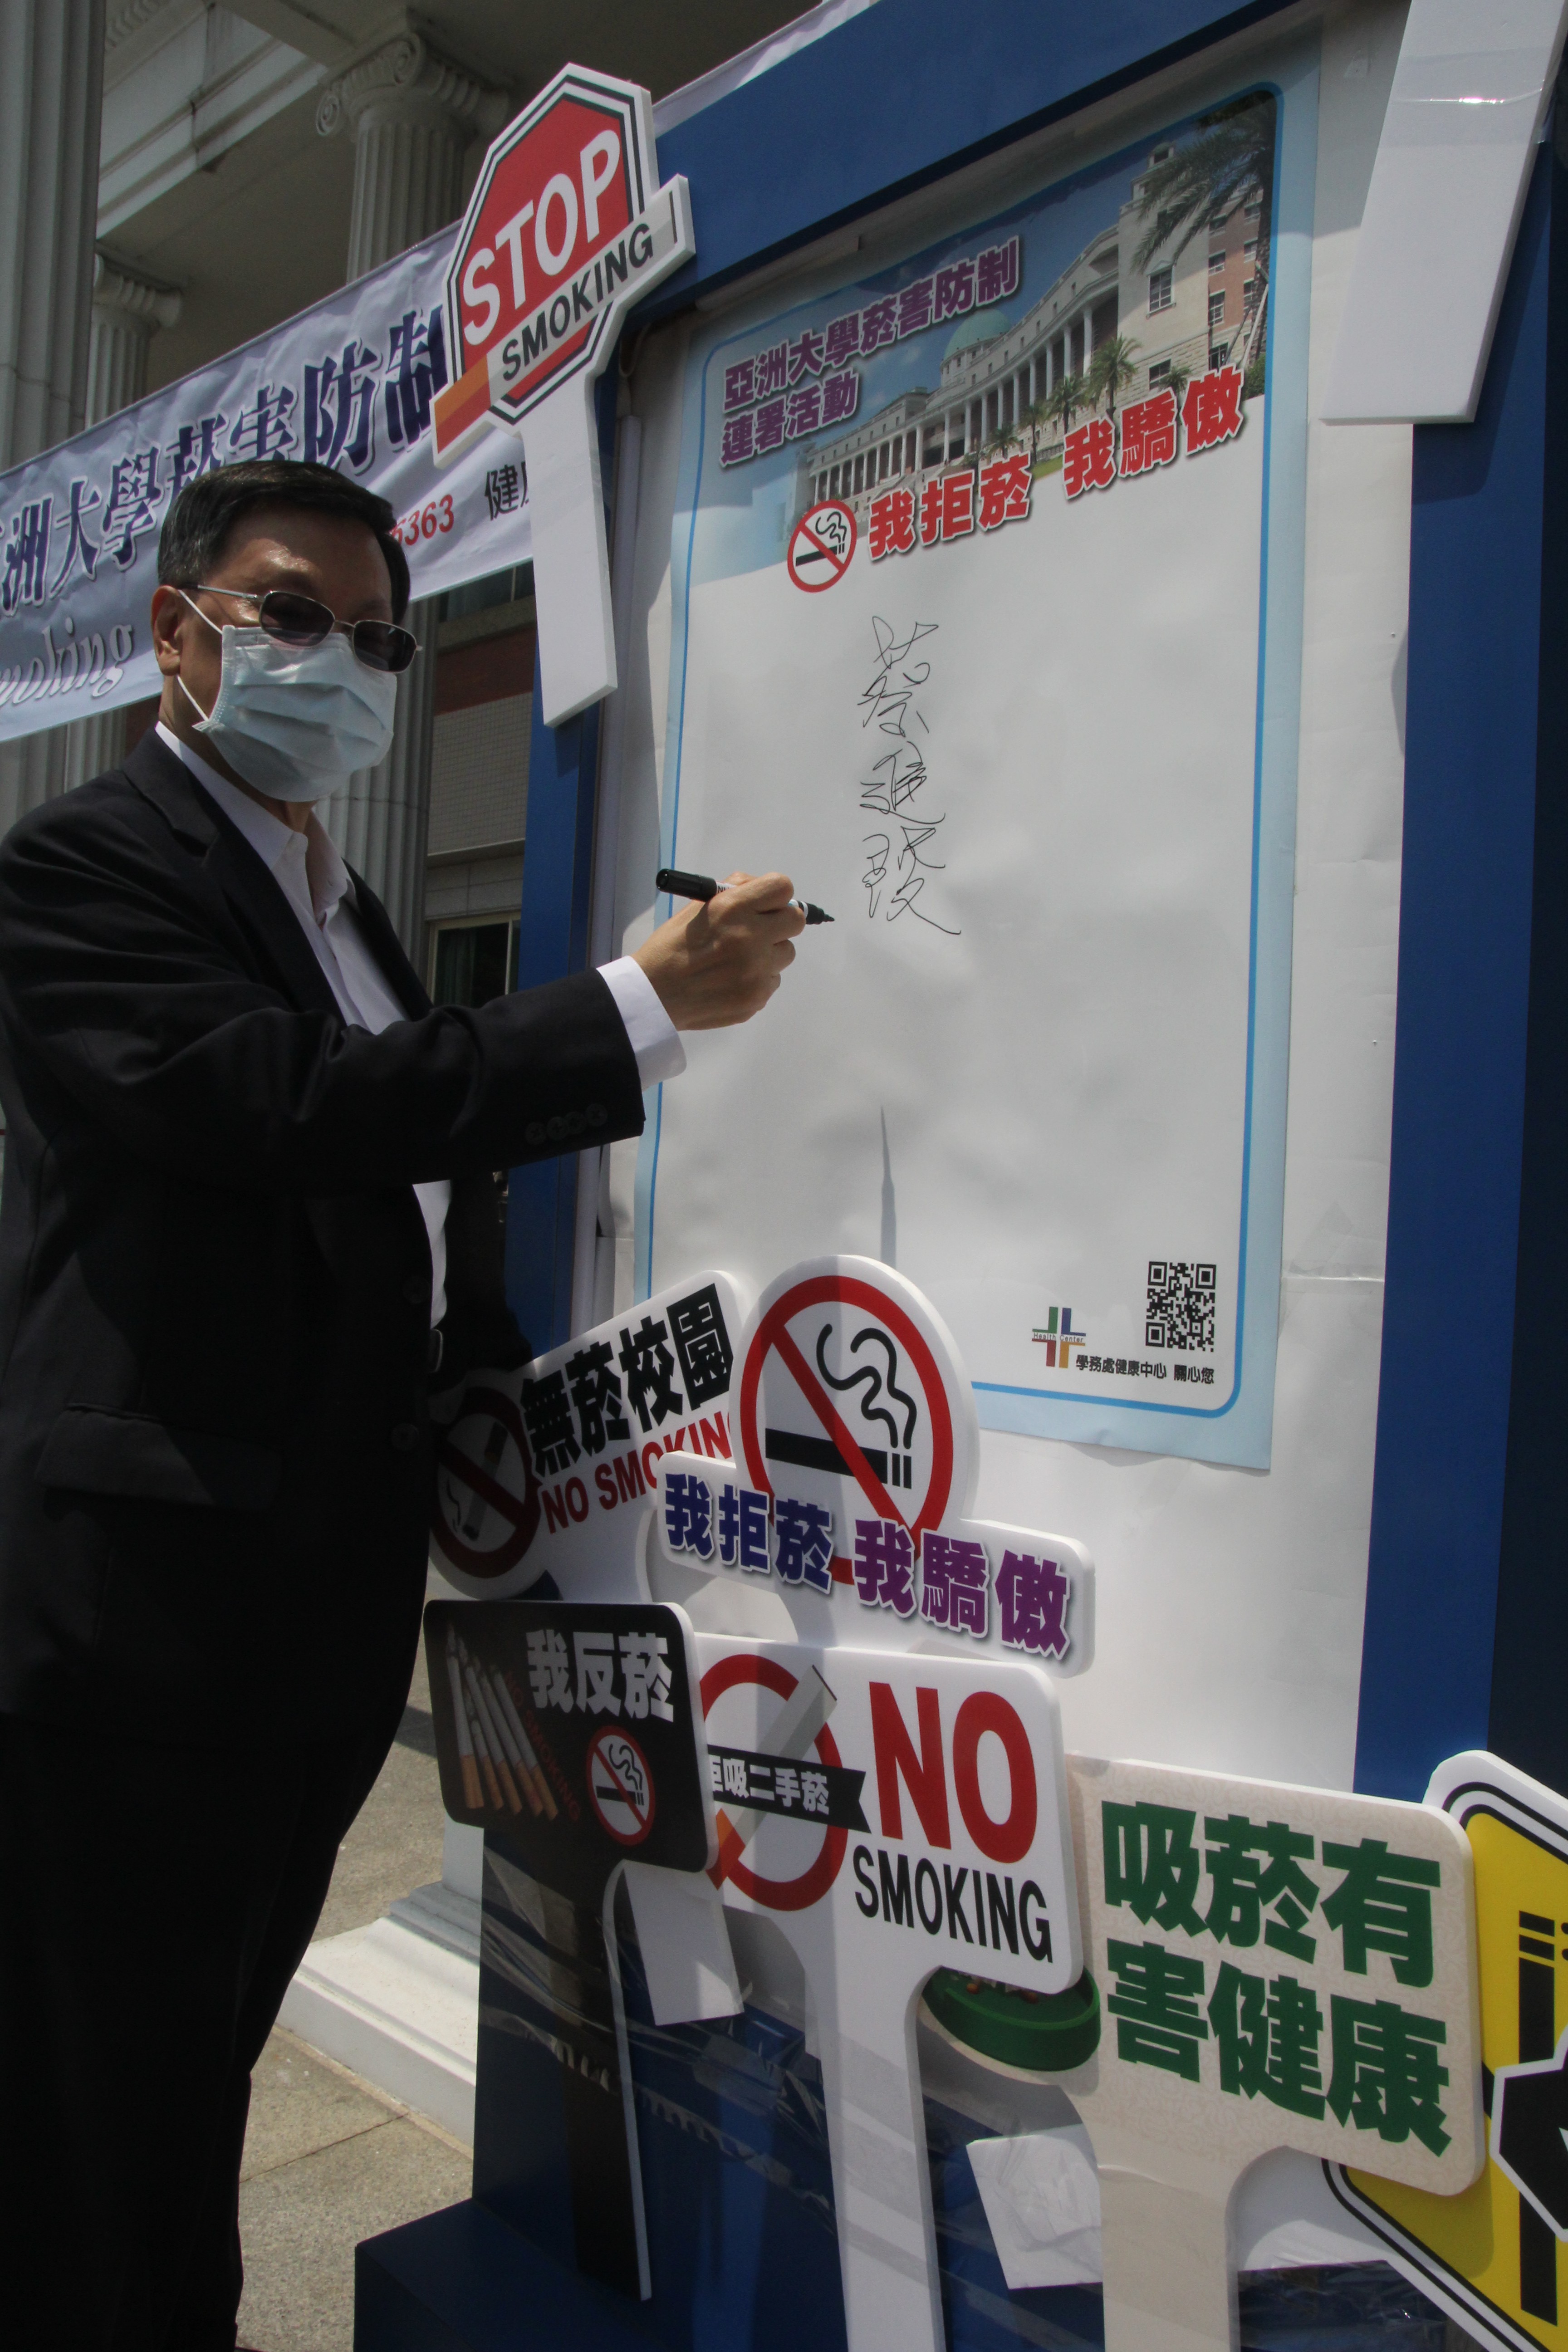 蔡進發校長在拒菸海報上簽名，表達支持無菸校園活動的決心。